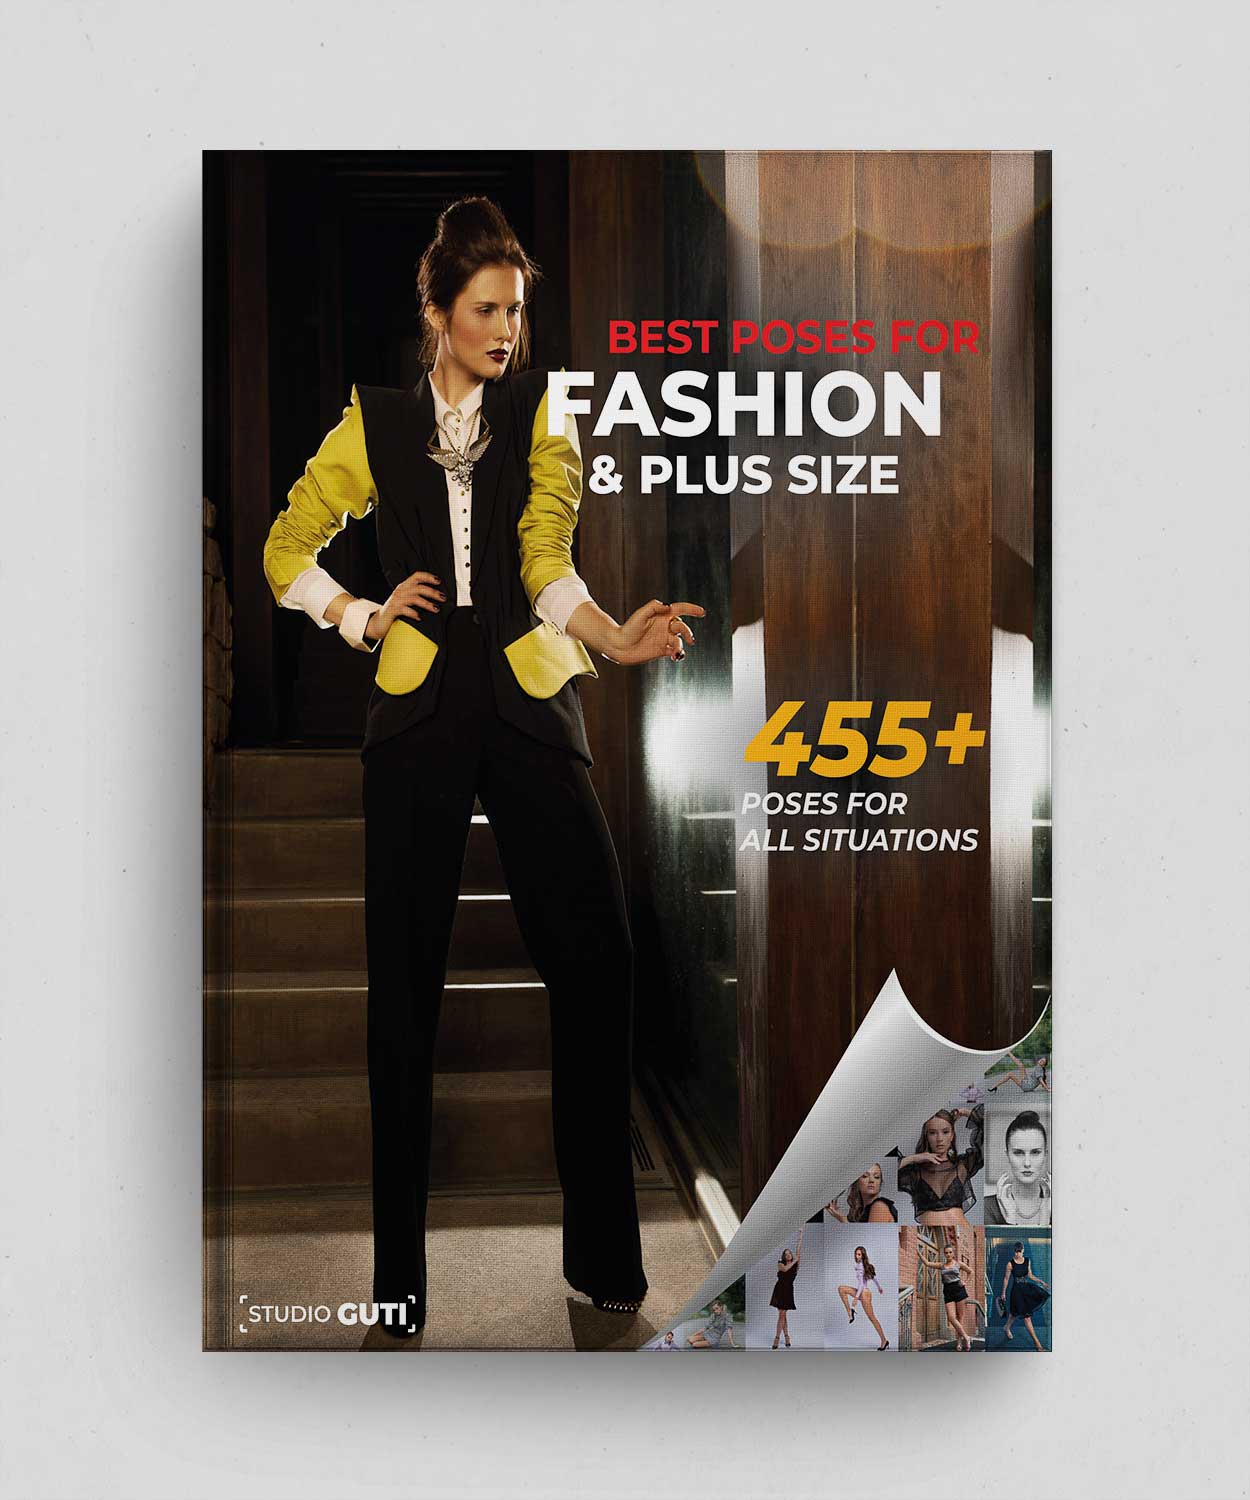 Die 455 besten Posen für Fashion & Size Plus – Digitales Buch